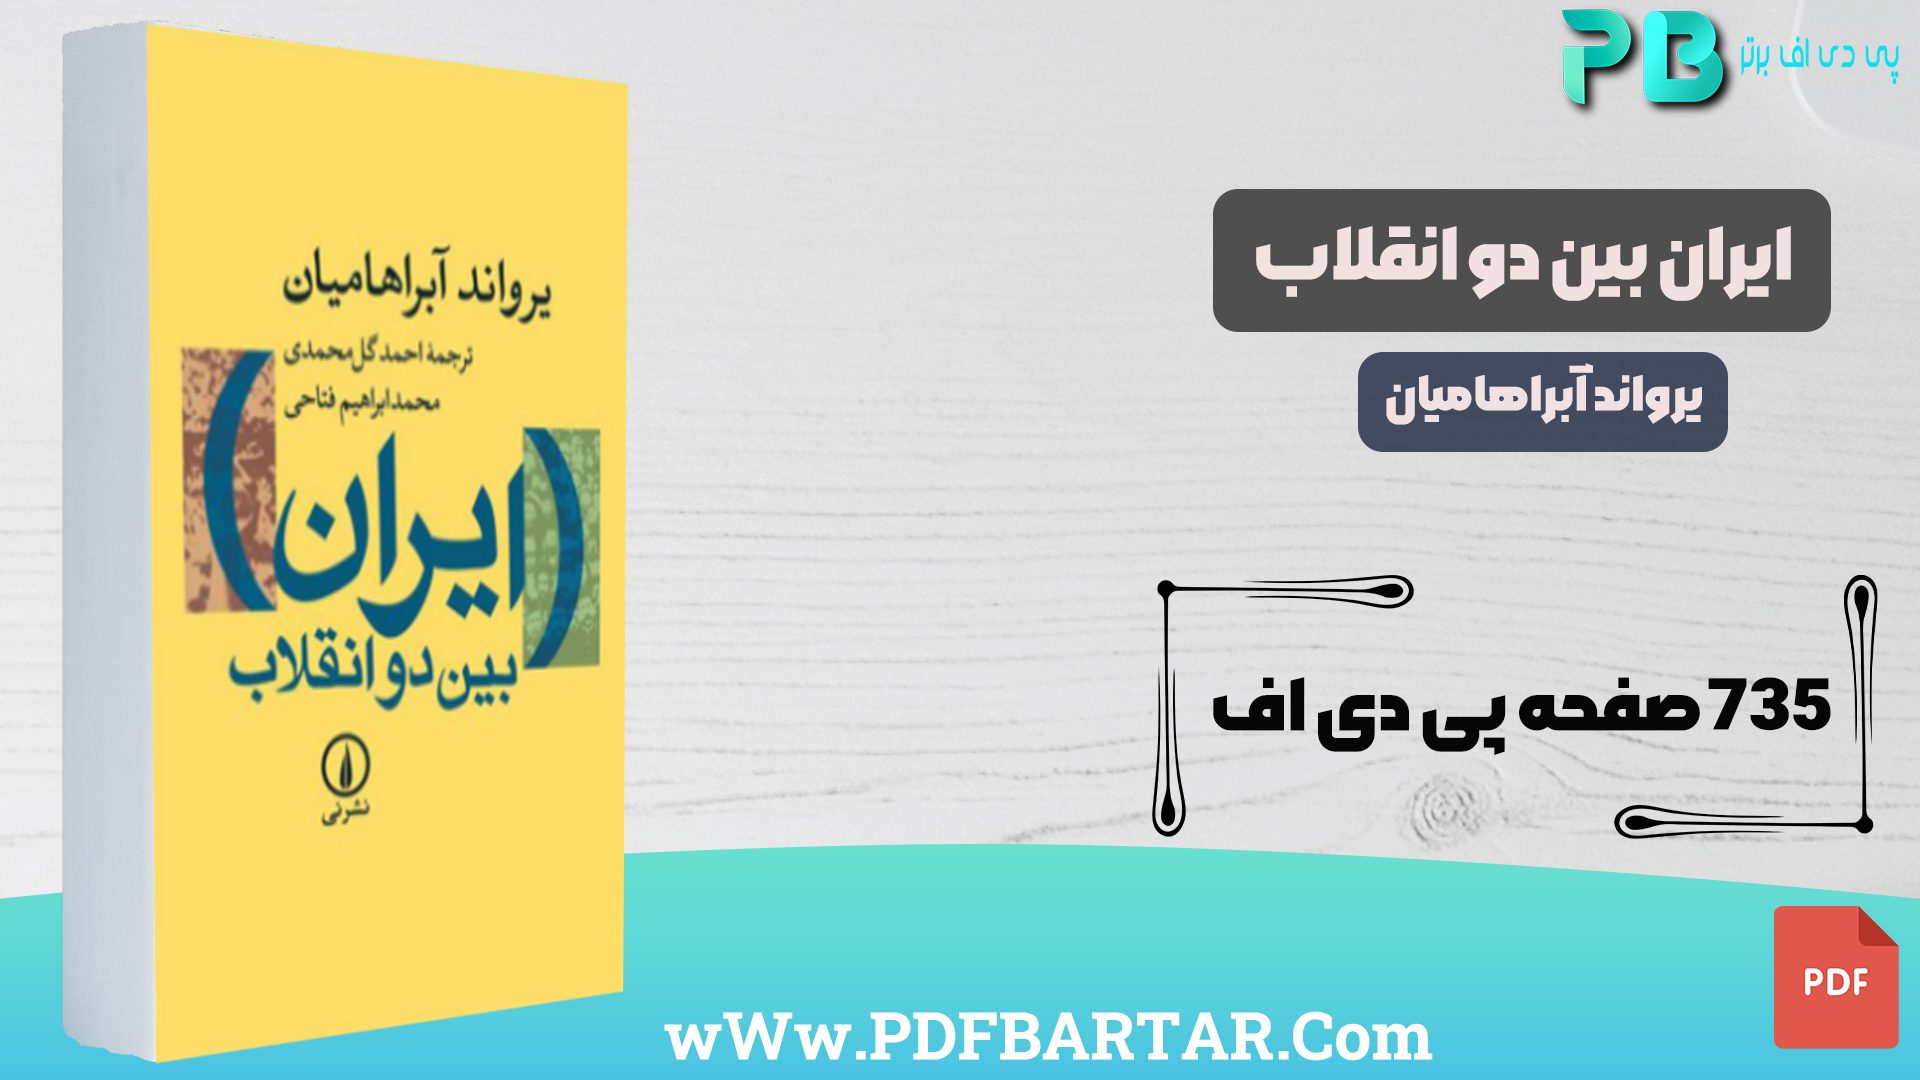 دانلود پی دی اف کتاب ایران بین دو انقلاب - پی دی اف برتر